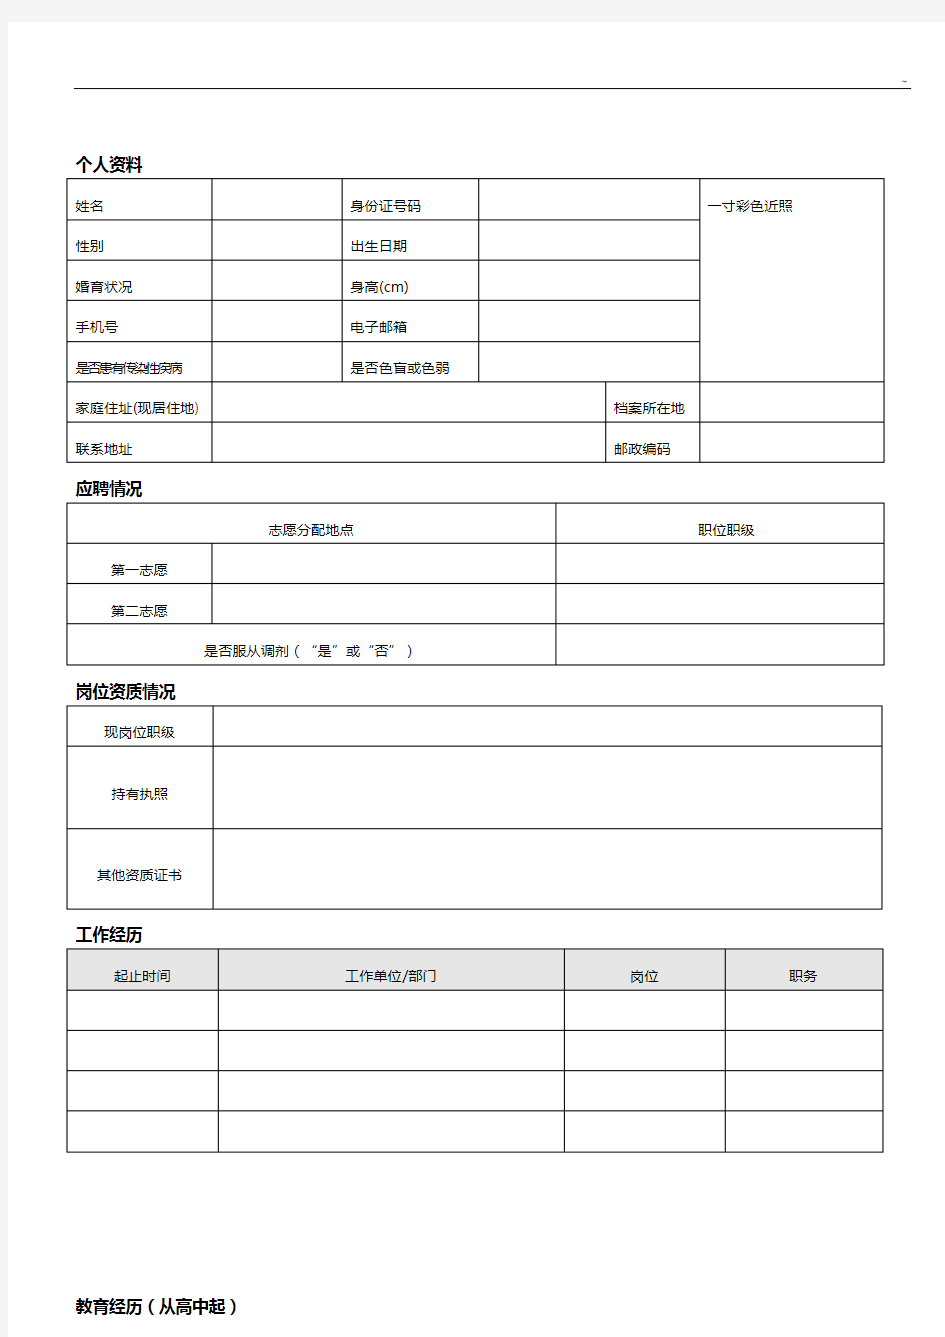 中国南方航空股份有限企业单位社会招聘应聘申请表